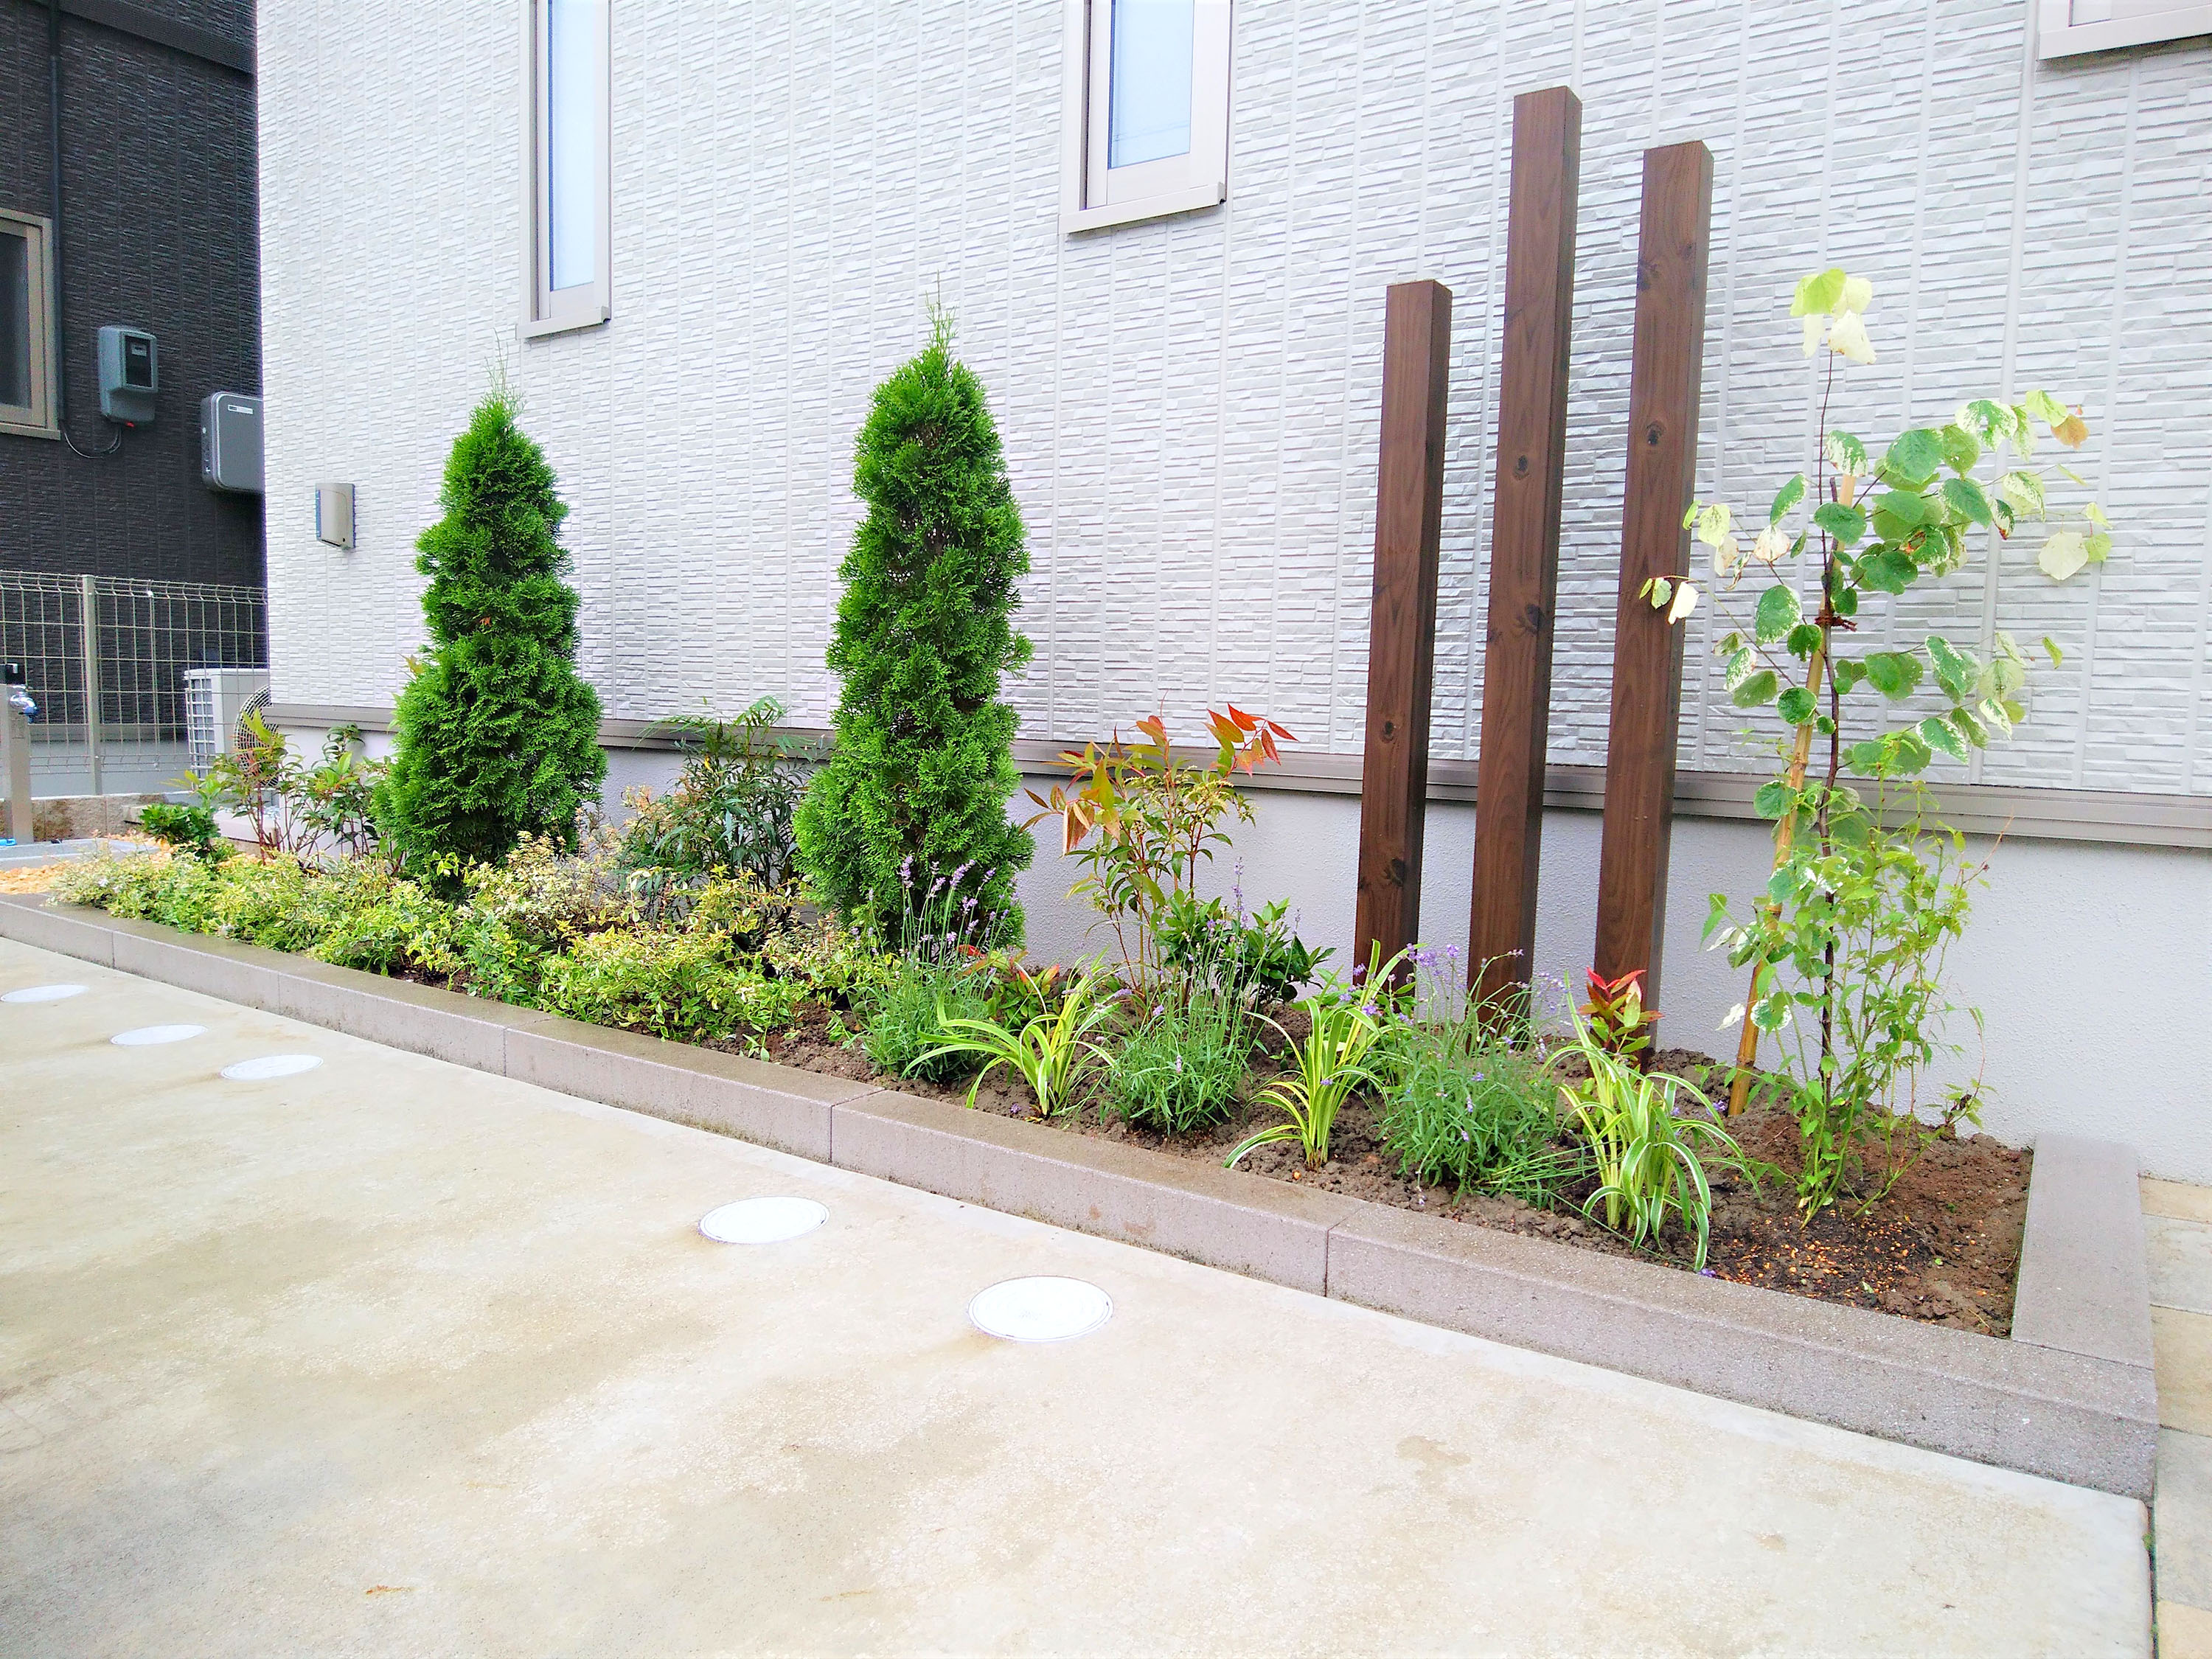 デザインブロックで作成したおしゃれなミニ花壇と市松模様のエントランス 株式会社エルヴェグリーン 株式会社エルヴェグリーン ガーデンプラット